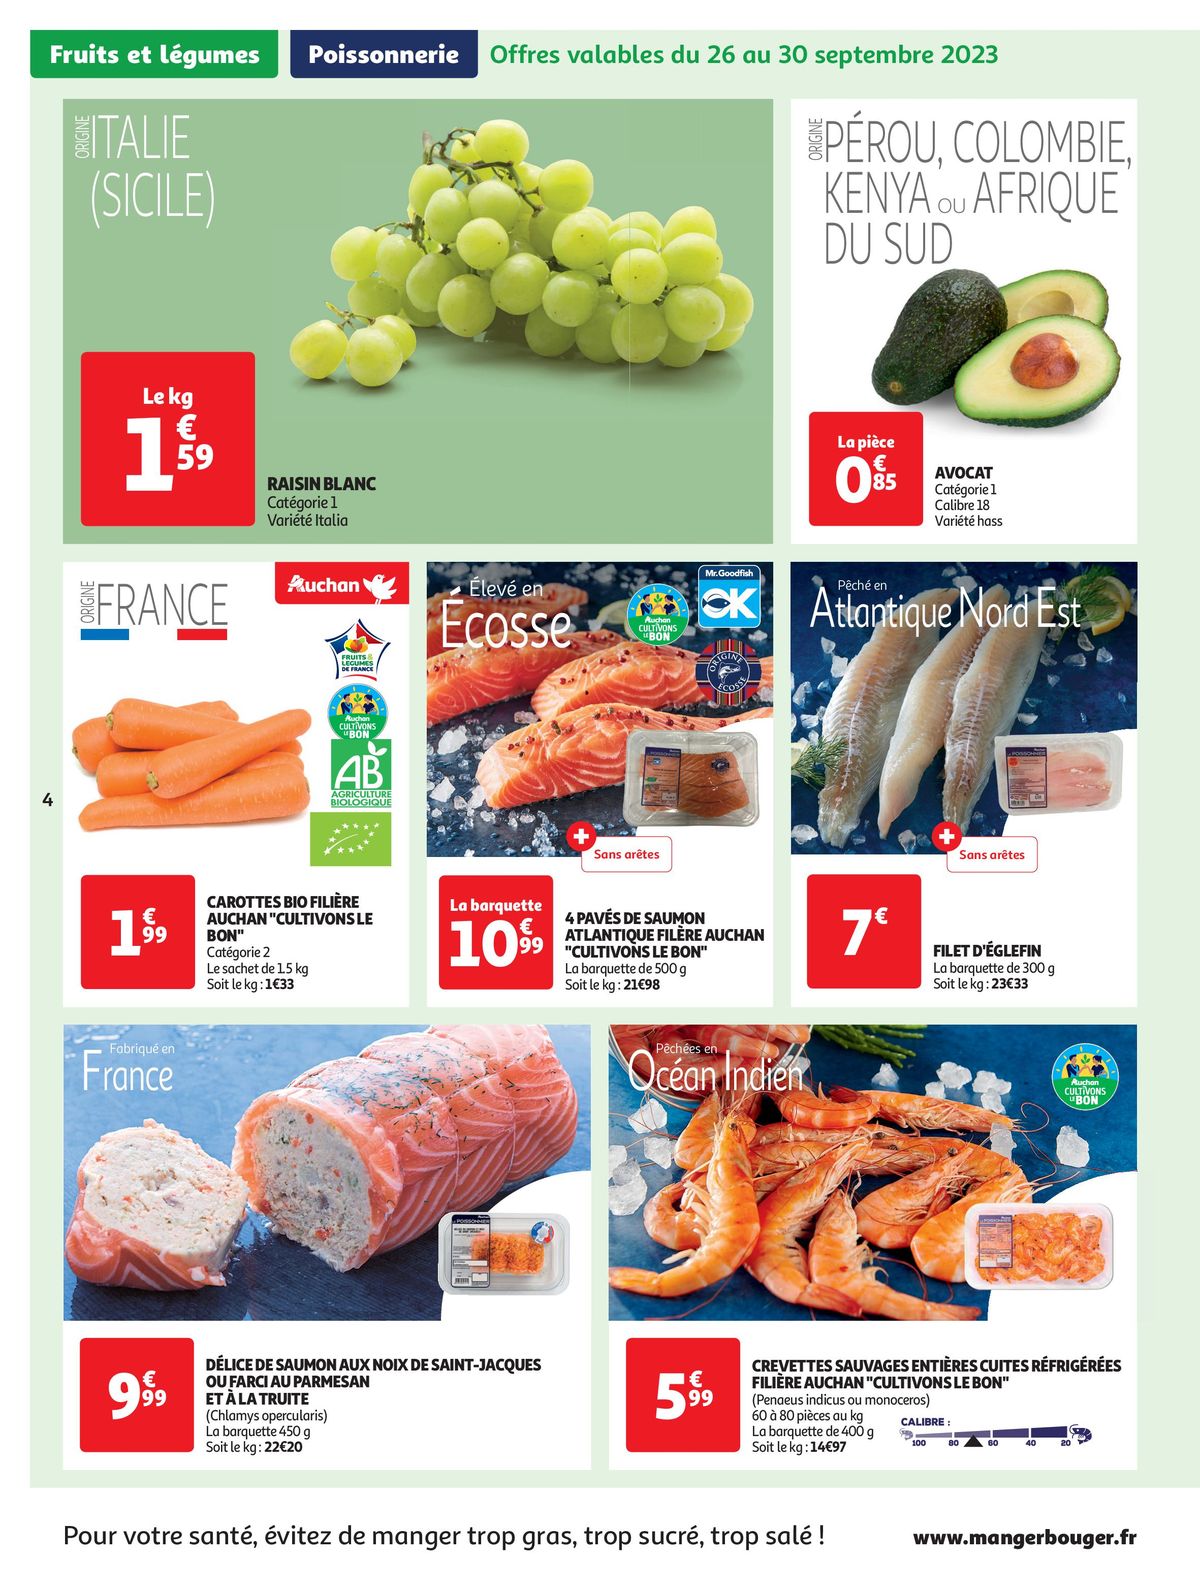 Catalogue Spécial Cuisine Gourmane dans votre supermarché, page 00004